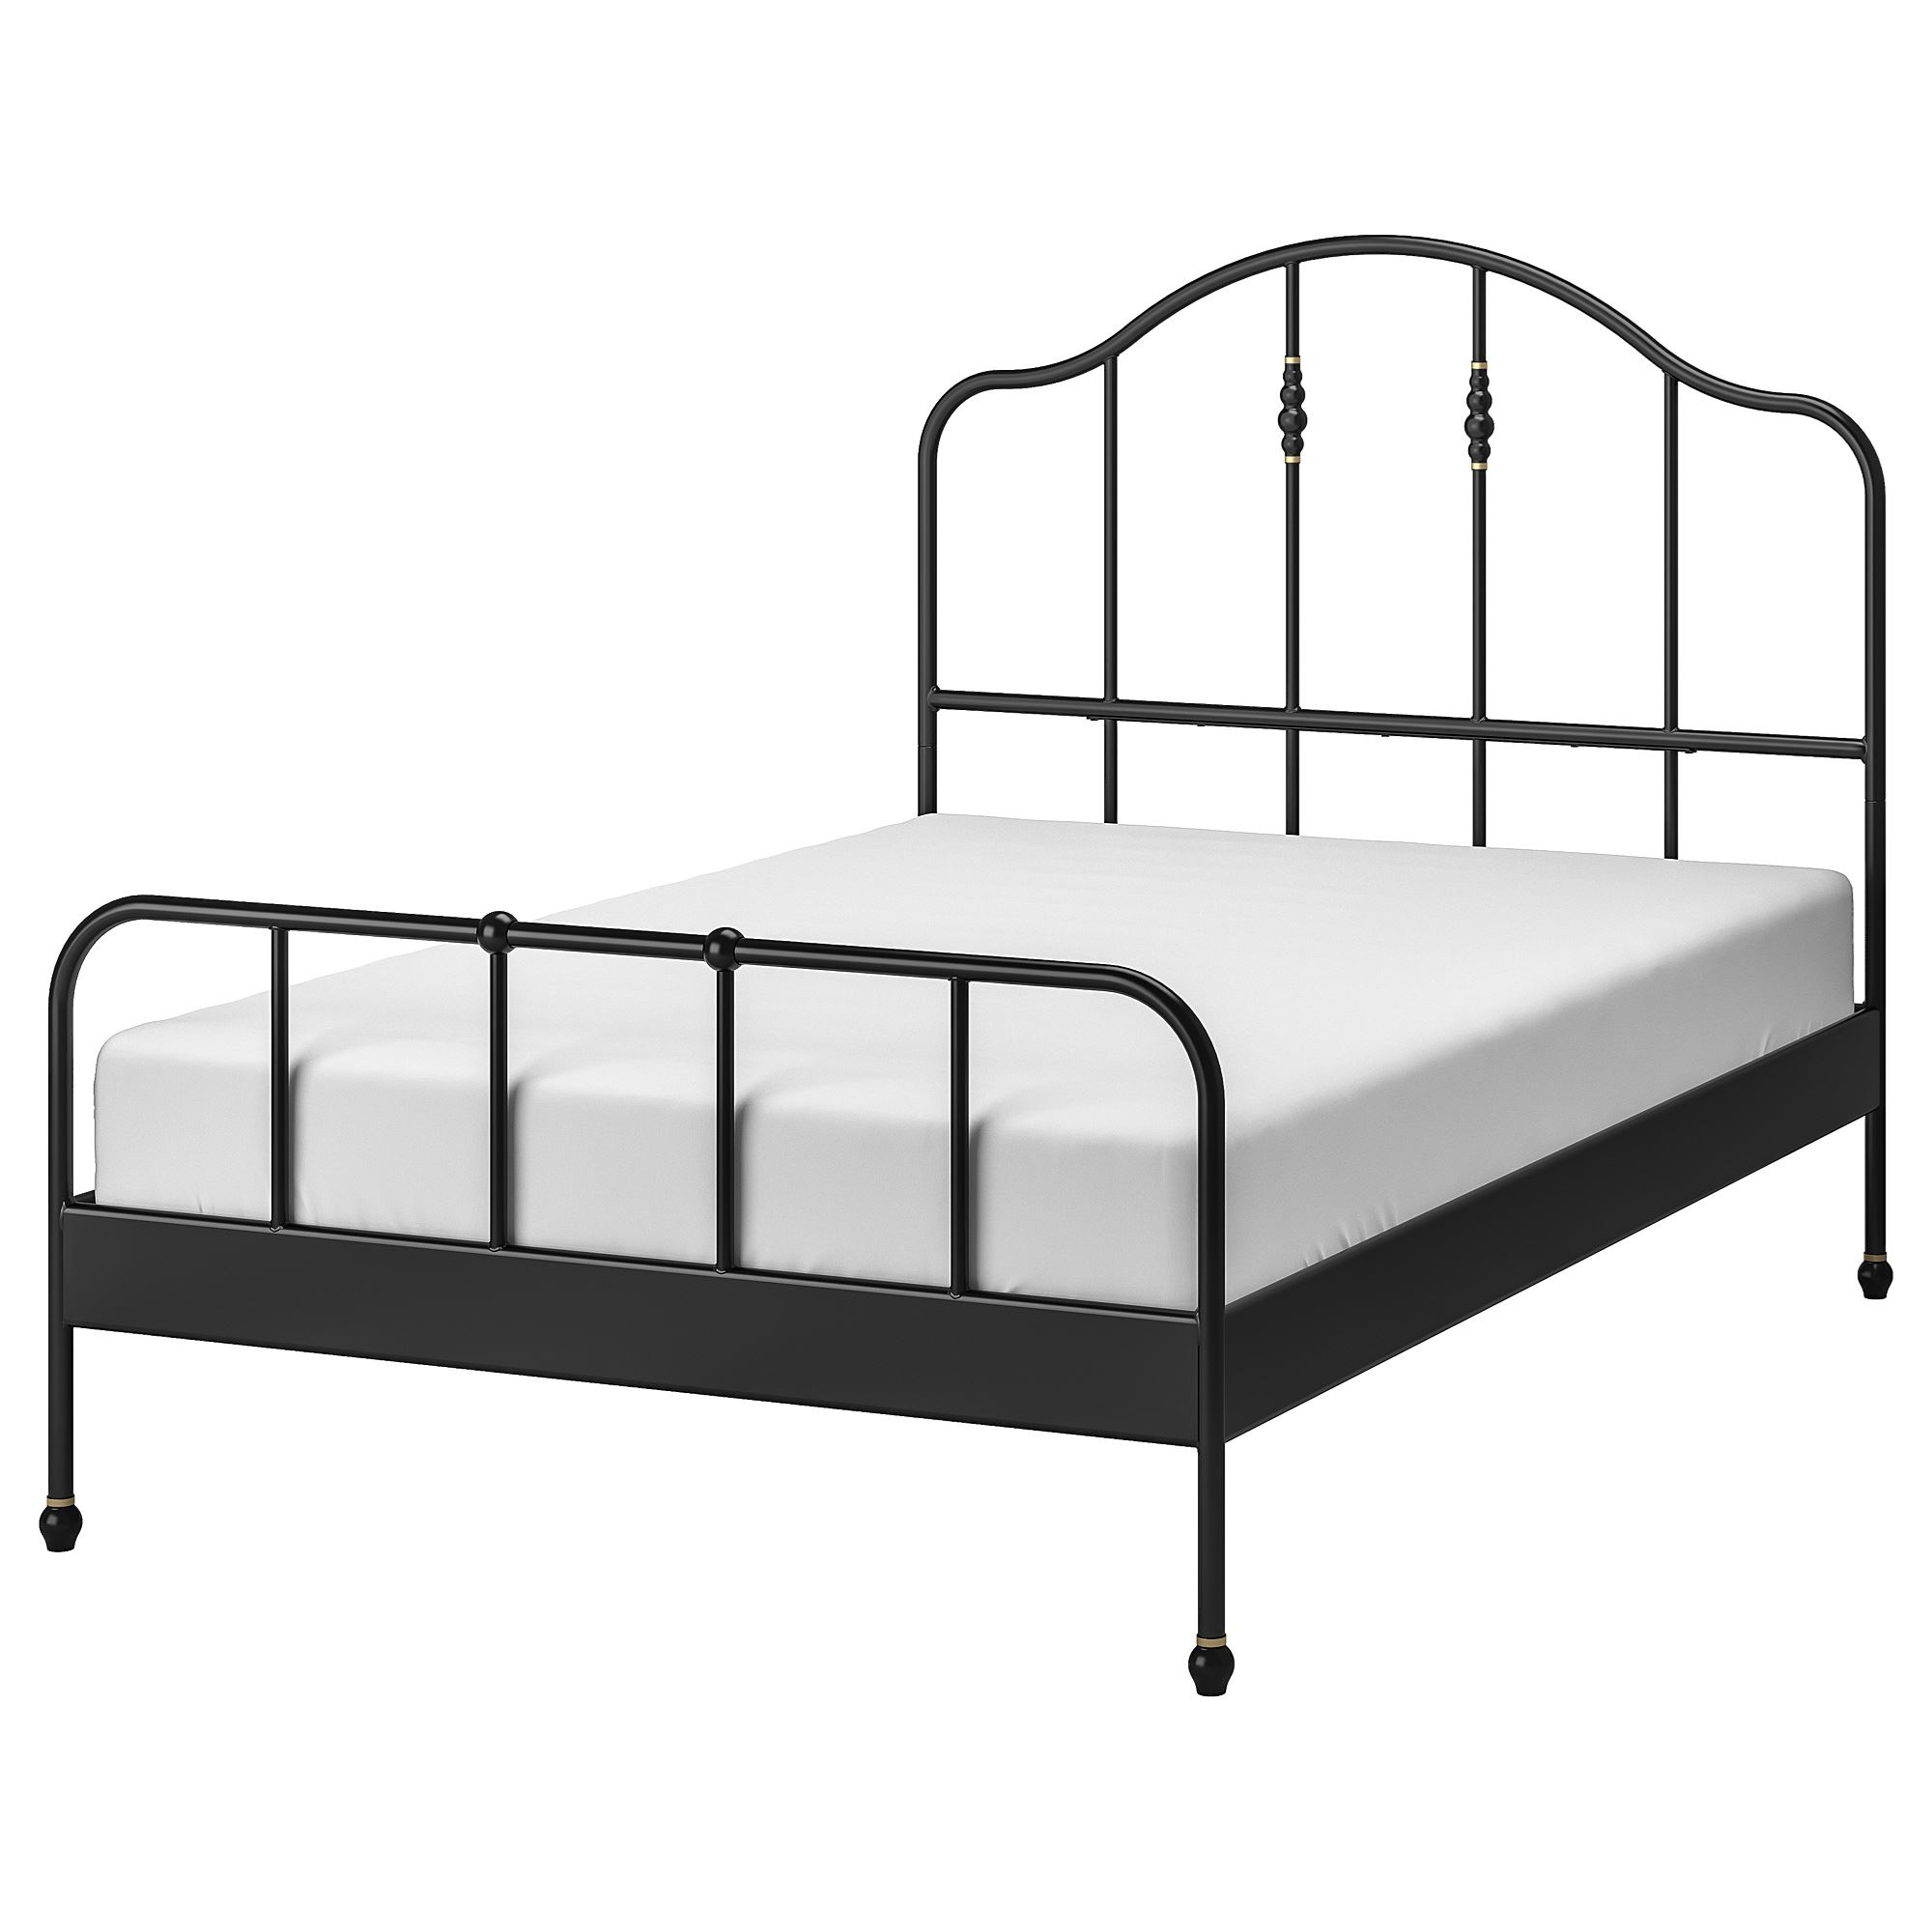 SAGSTUA/LINDBADEN siyah 140x200 cm çift kişilik karyola | IKEA